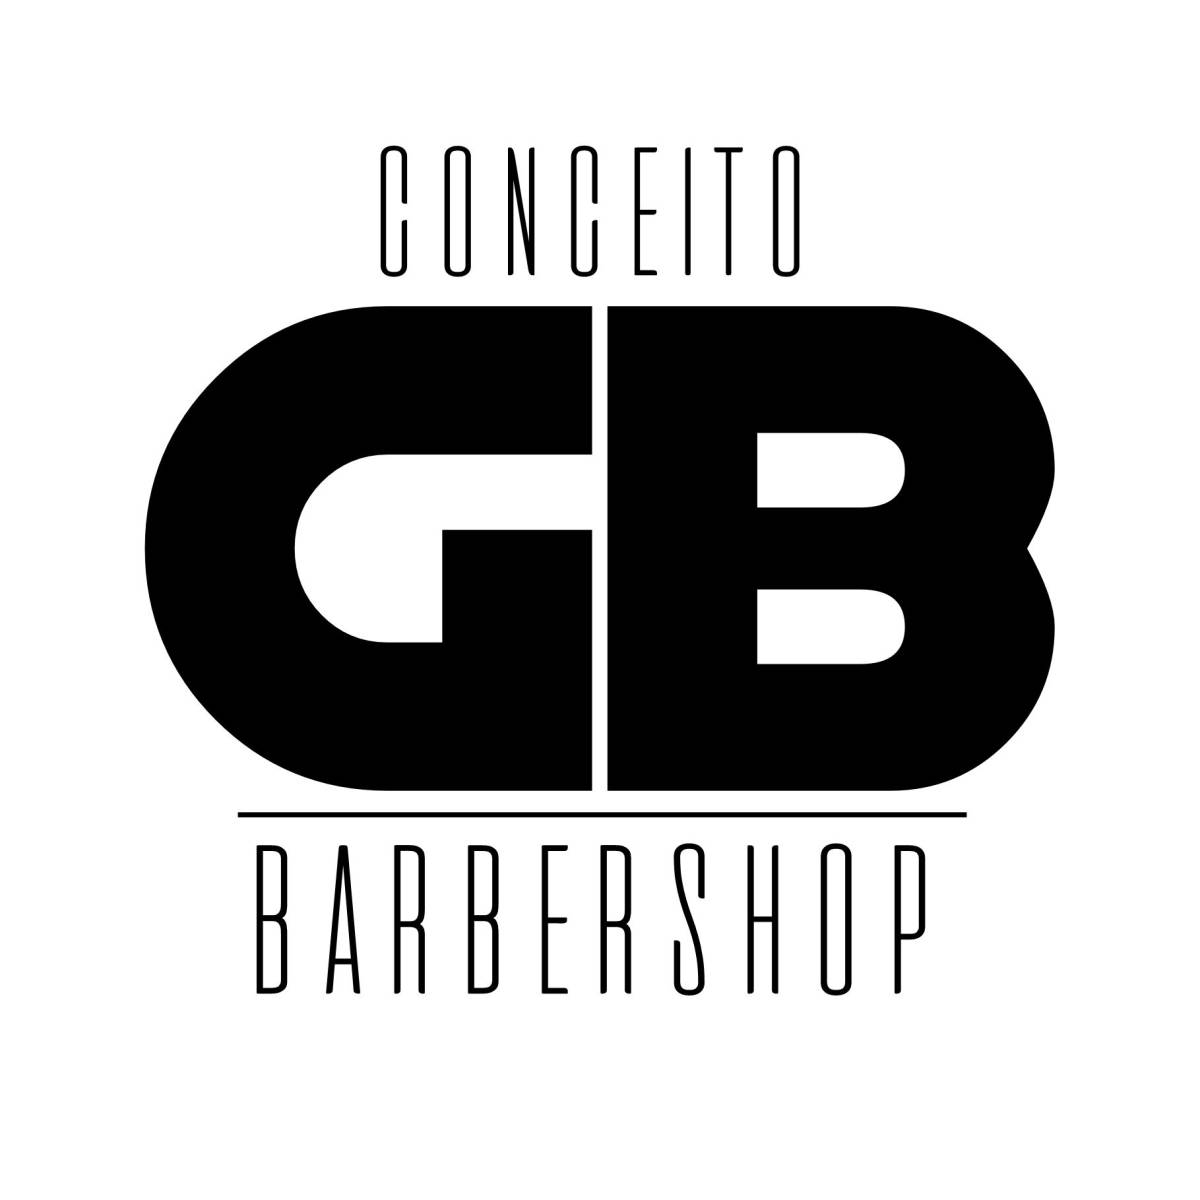 Gb barbershop - São João da Madeira - Cabeleireiros e Barbeiros